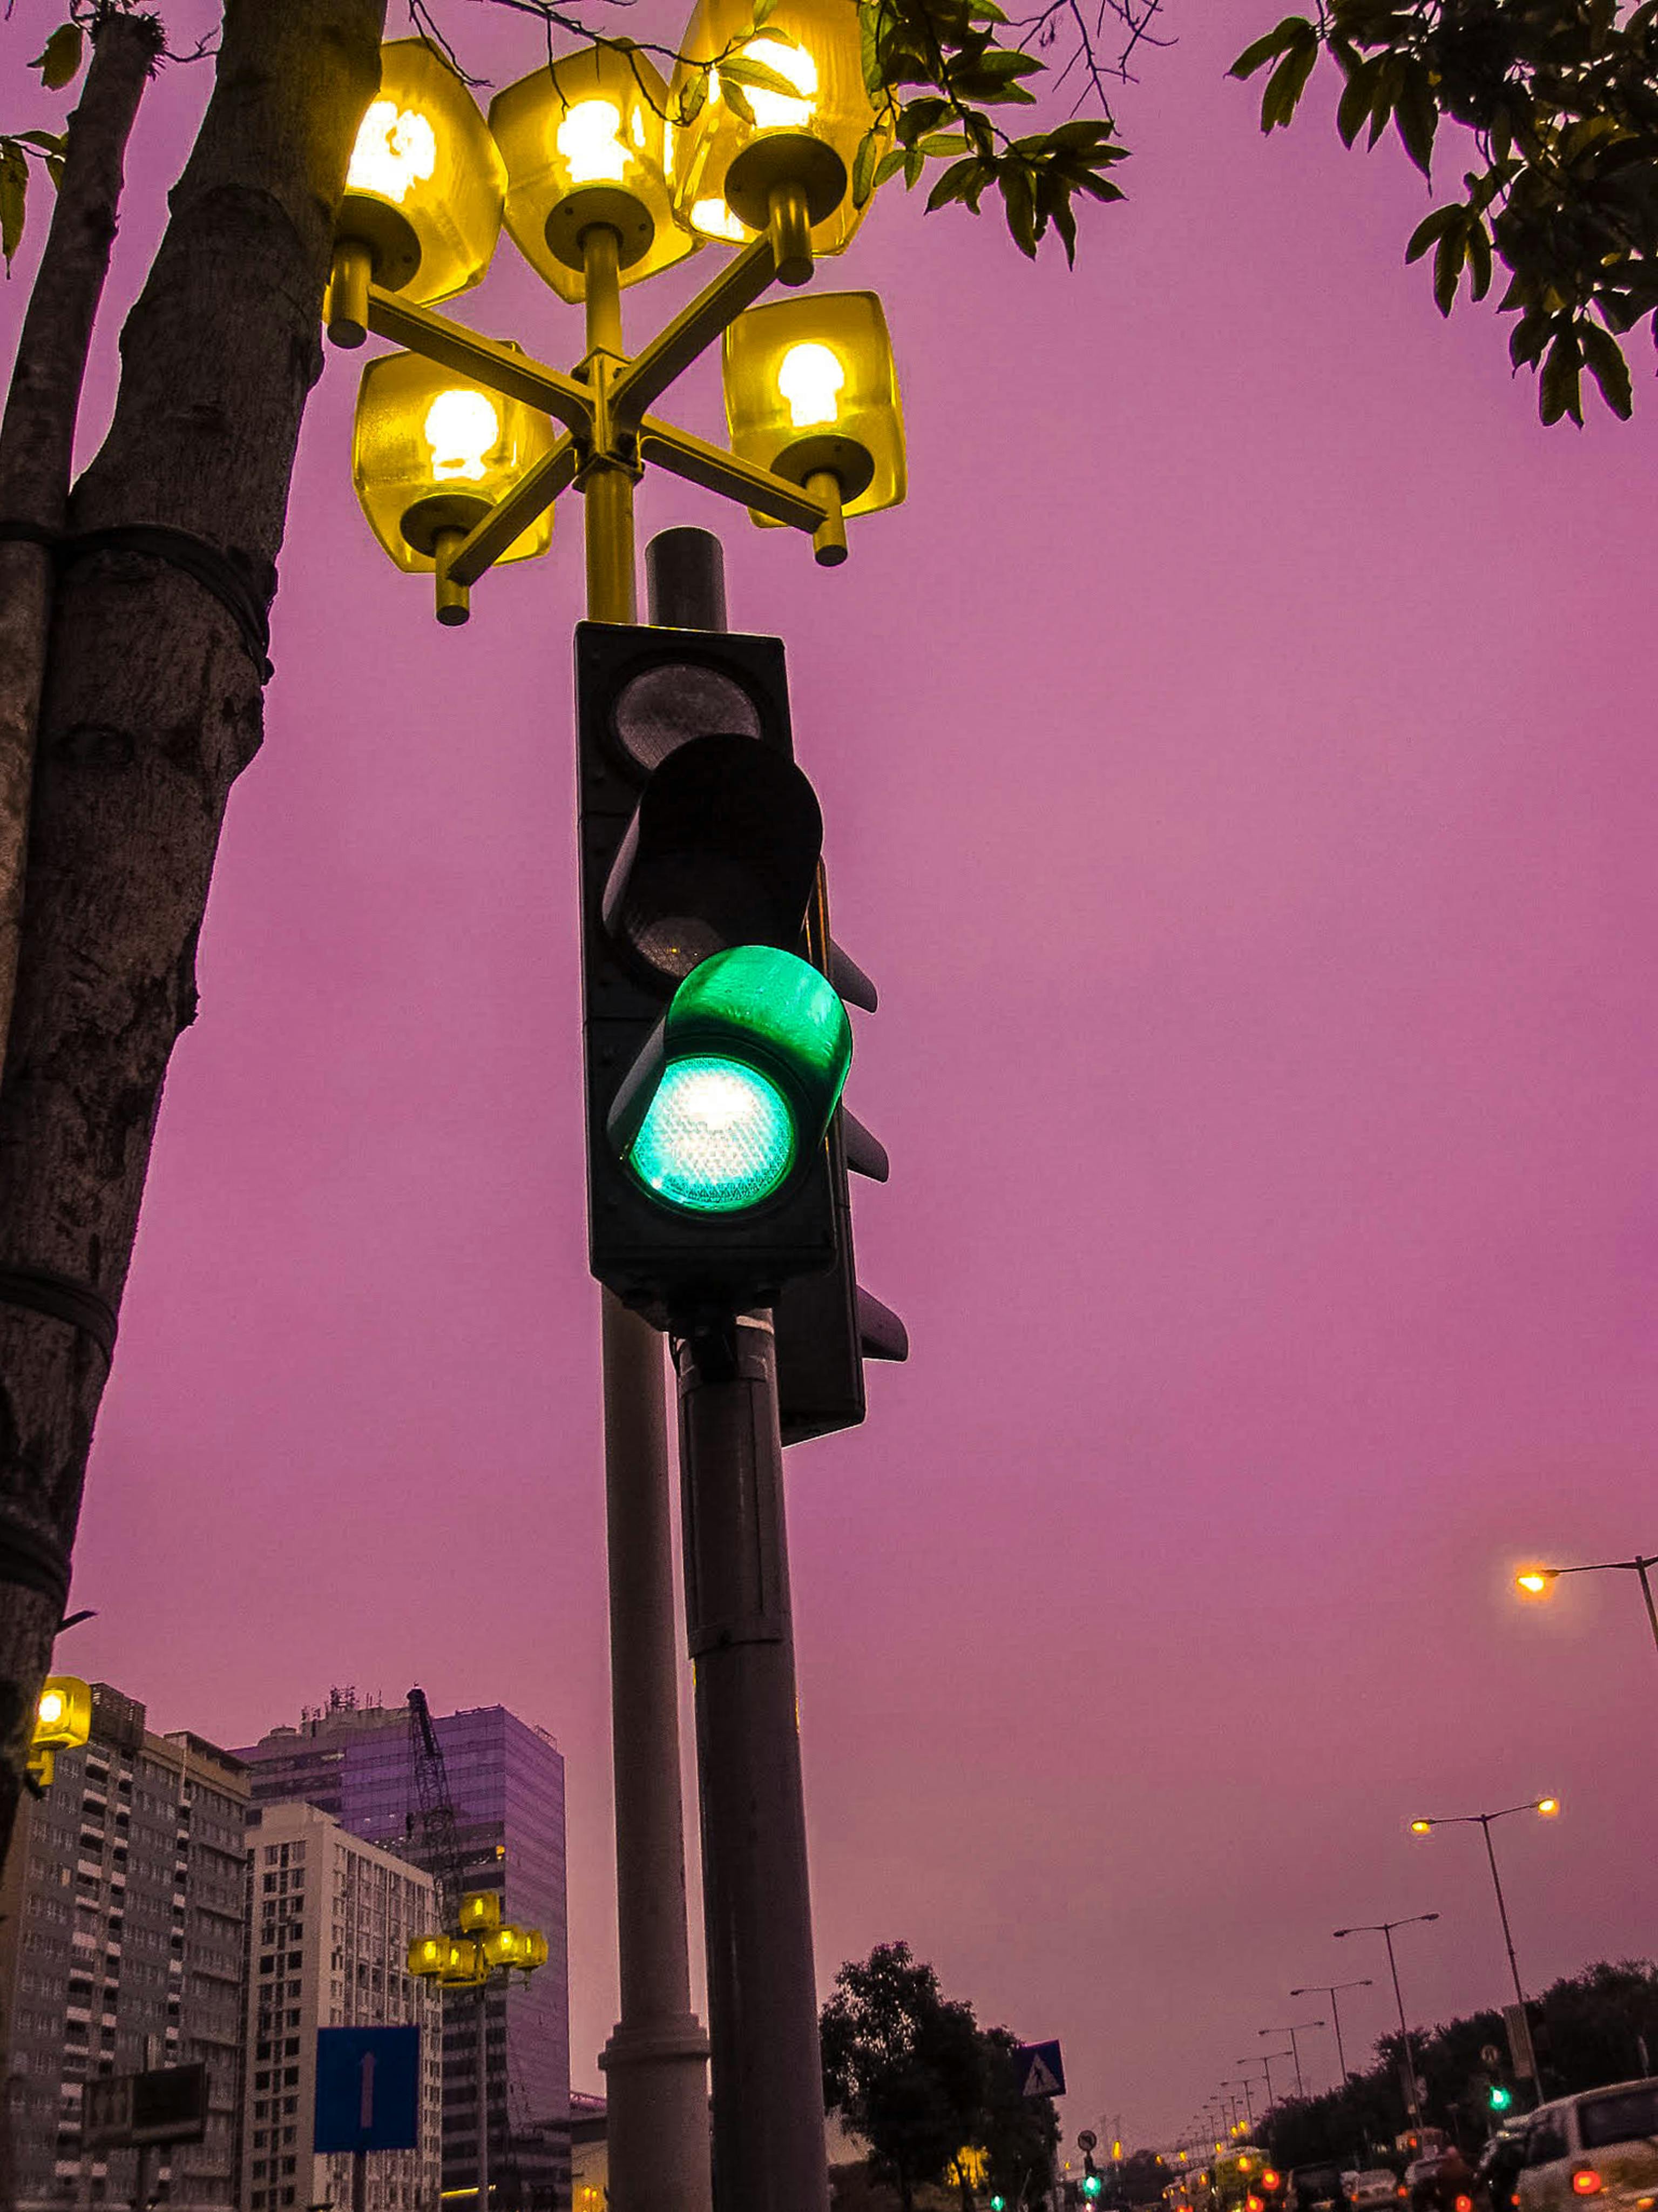 Một hình ảnh đèn giao thông đen sẽ cho bạn cảm giác u uất và buồn bã. Hãy thưởng thức hình ảnh đèn giao thông đen này để khám phá thế giới tối tăm và đầy bí ẩn của nó. Cảm giác u uất và buồn bã sẽ giúp bạn trải nghiệm cảm giác và suy nghĩ khác nhau.